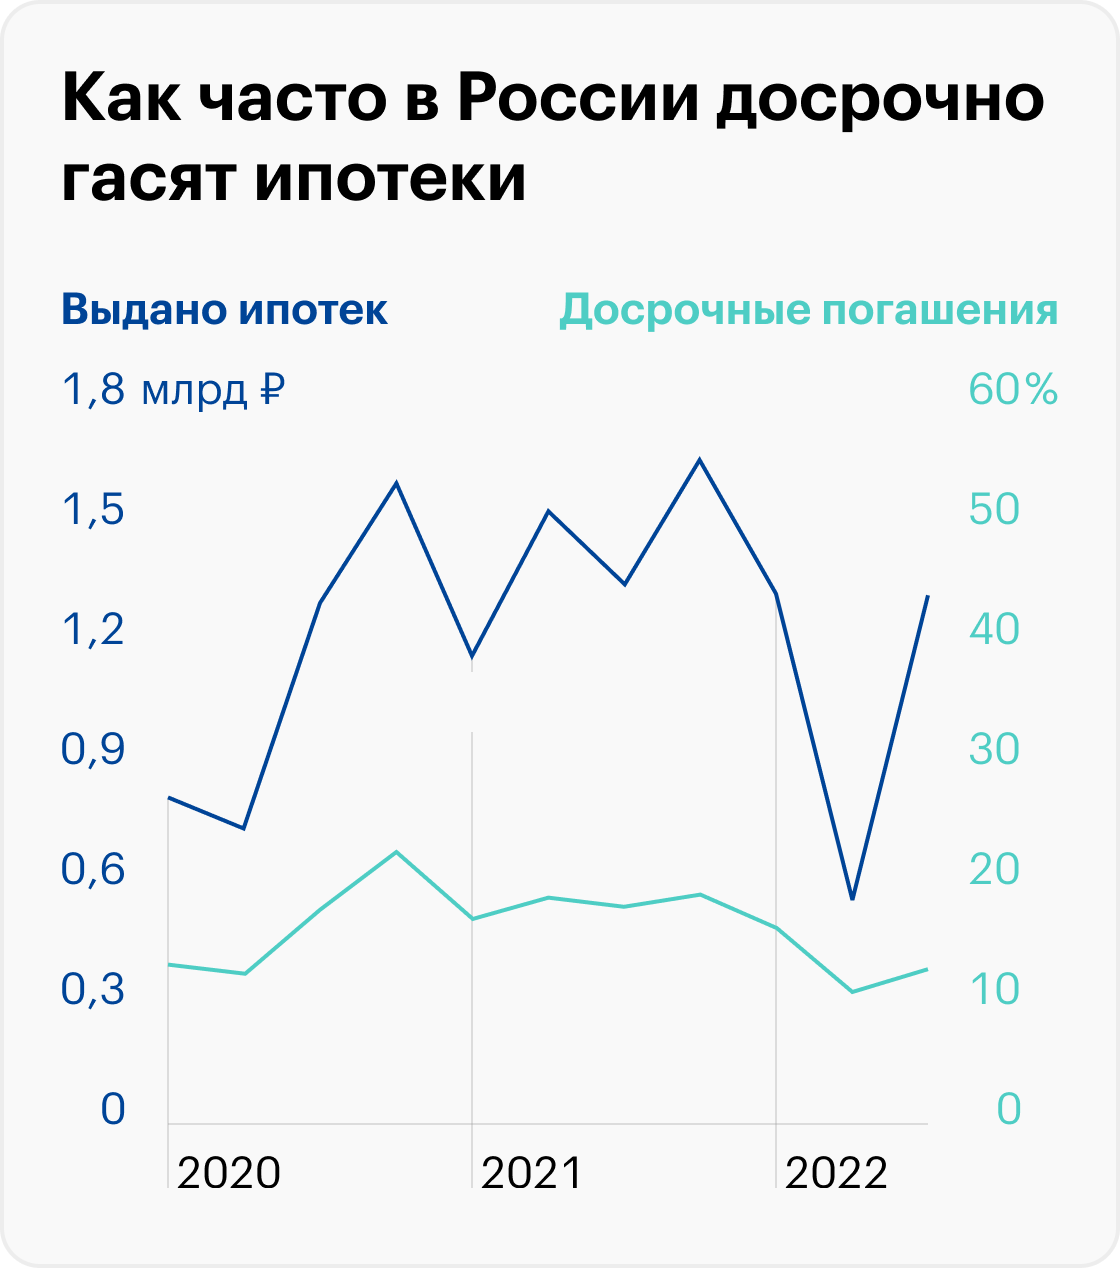 Объемы досрочного погашения ипотек снижаются уже три года, но третий квартал 2022 года стал рекордным. Источник: информационный бюллетень ЦБ РФ «Сведения о рынке ипотечного жилищного кредитования в России»